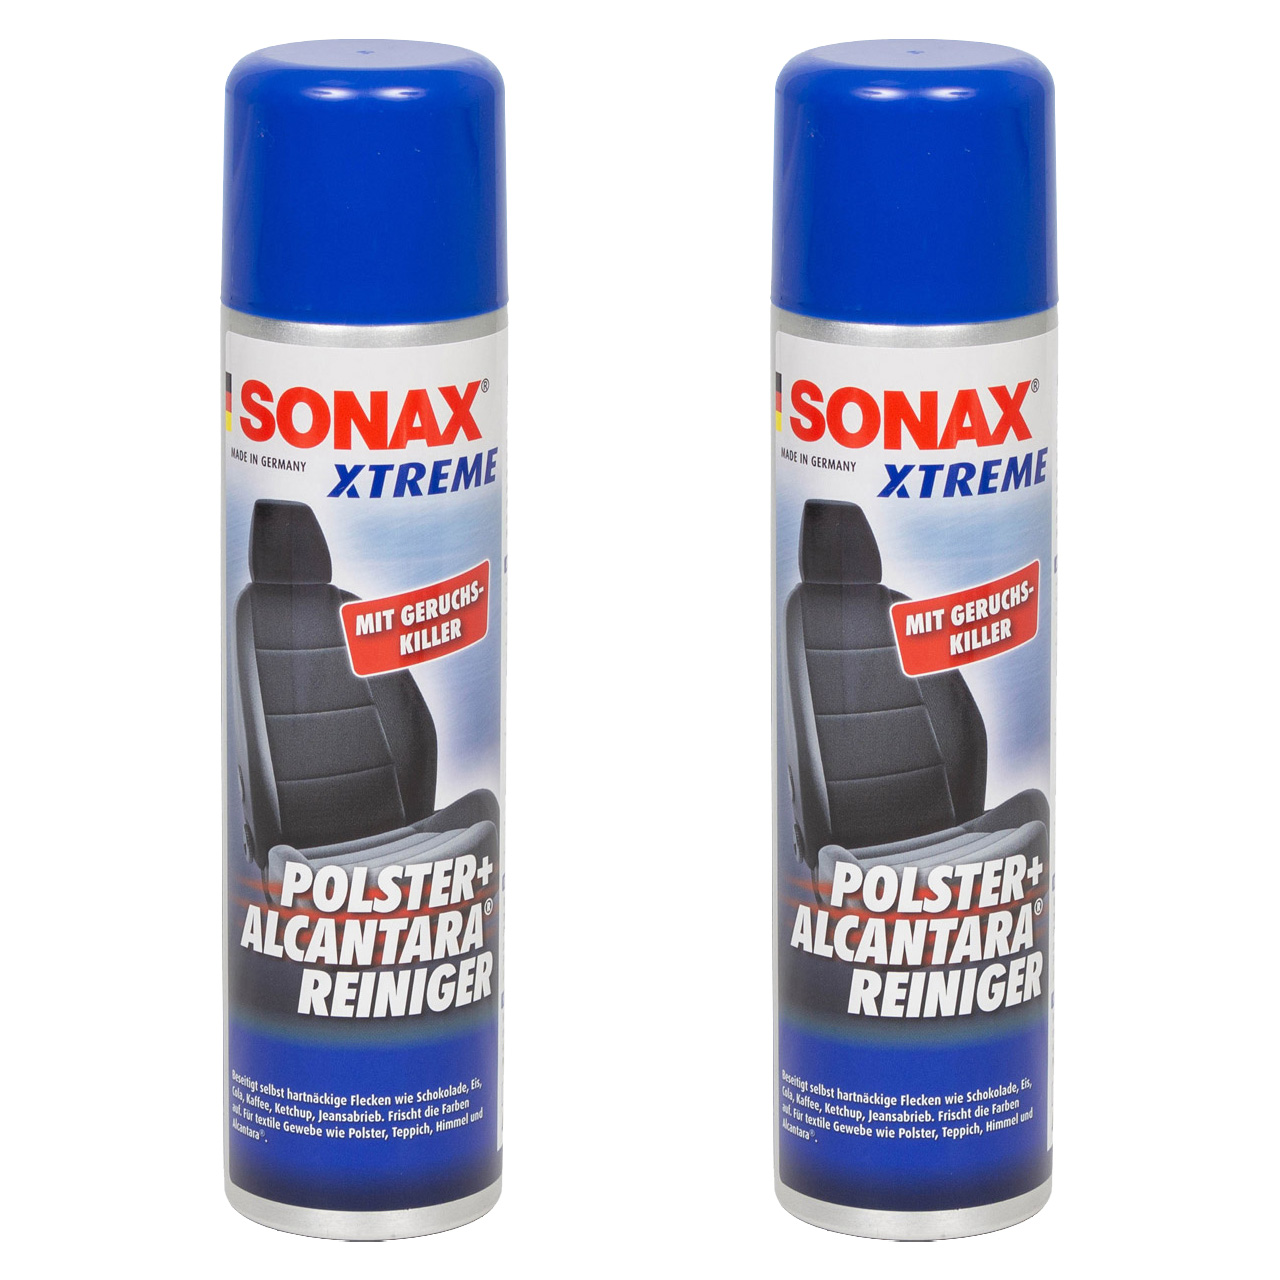 2x 400ml SONAX Xtreme Polster- & AlcantaraReiniger Geruchskiller Reiniger 206300